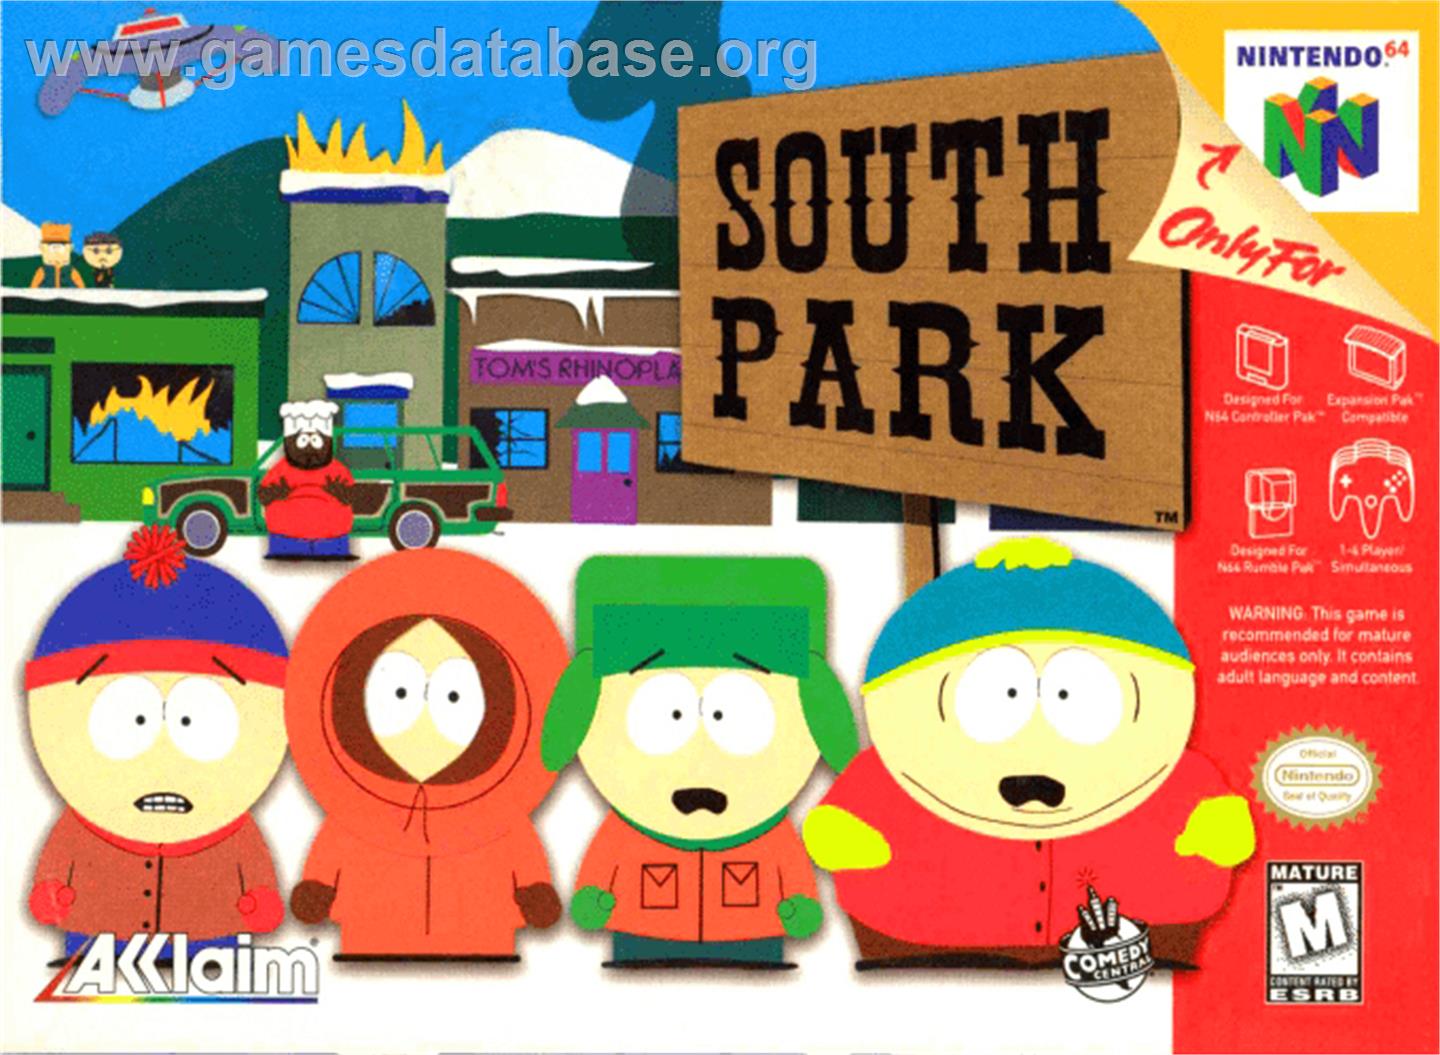 South Park: Chef's Luv Shack - Nintendo N64 - Artwork - Box